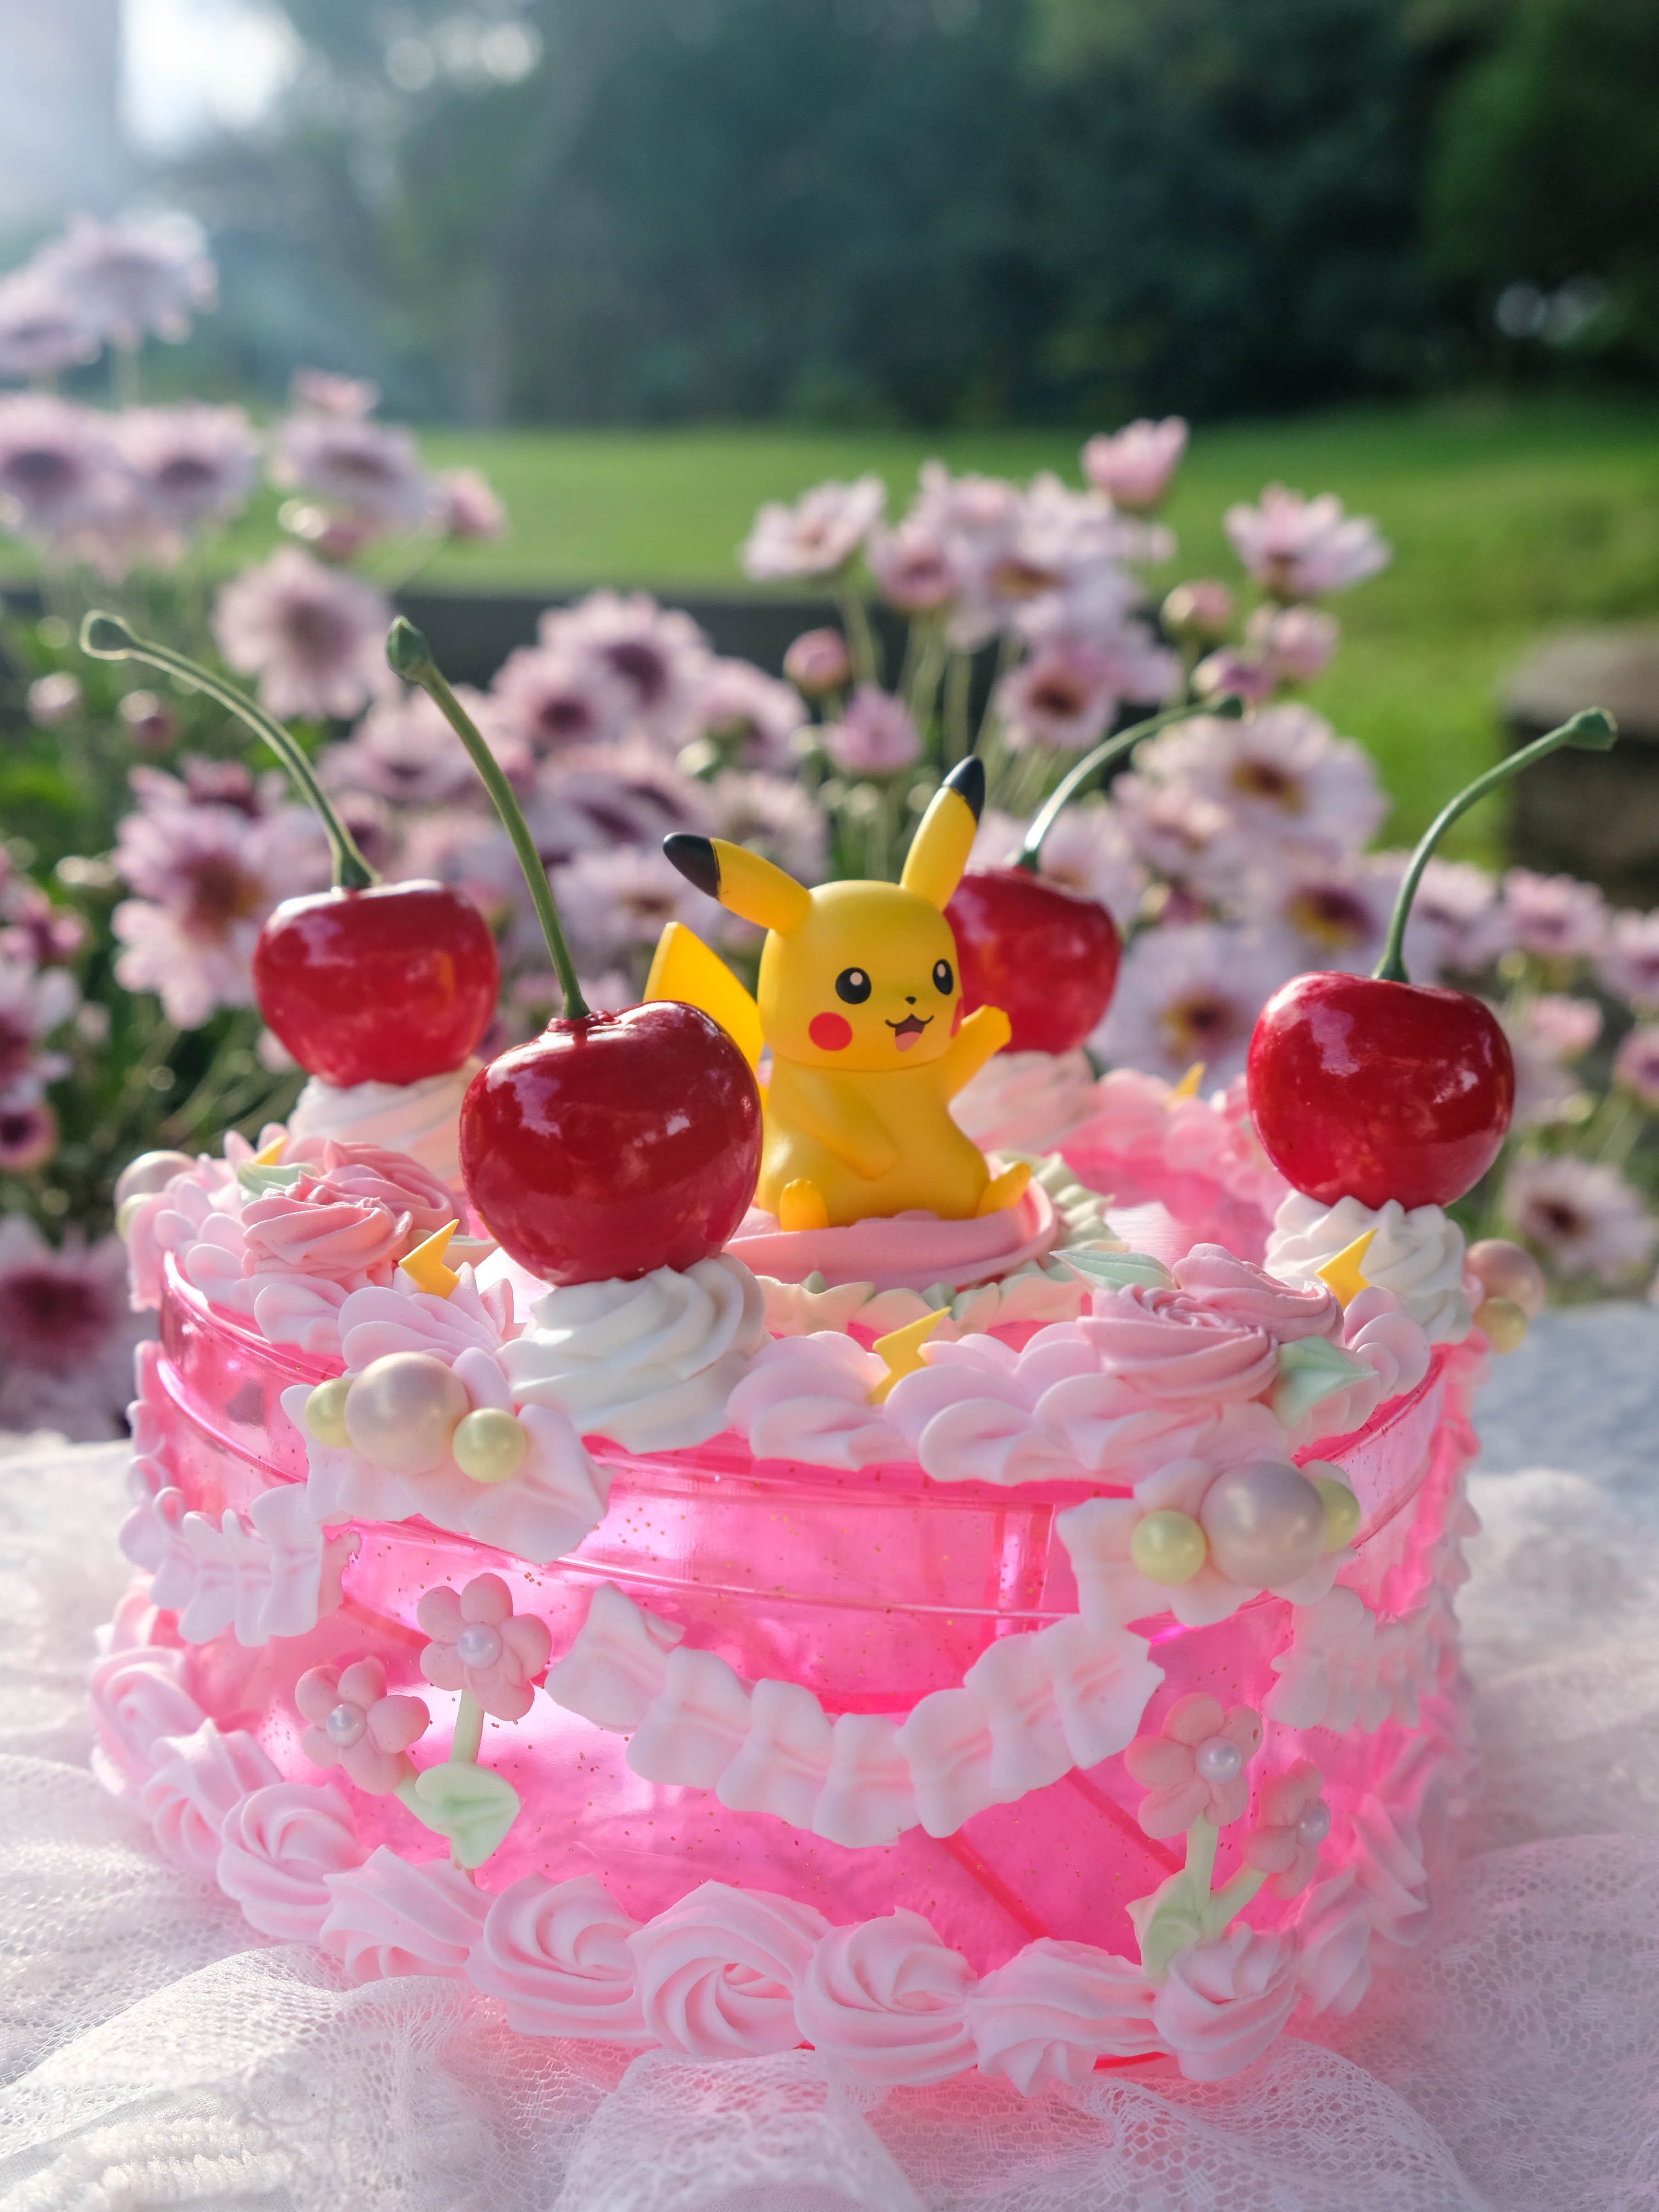 Pikachu Theme Cake - Chennai